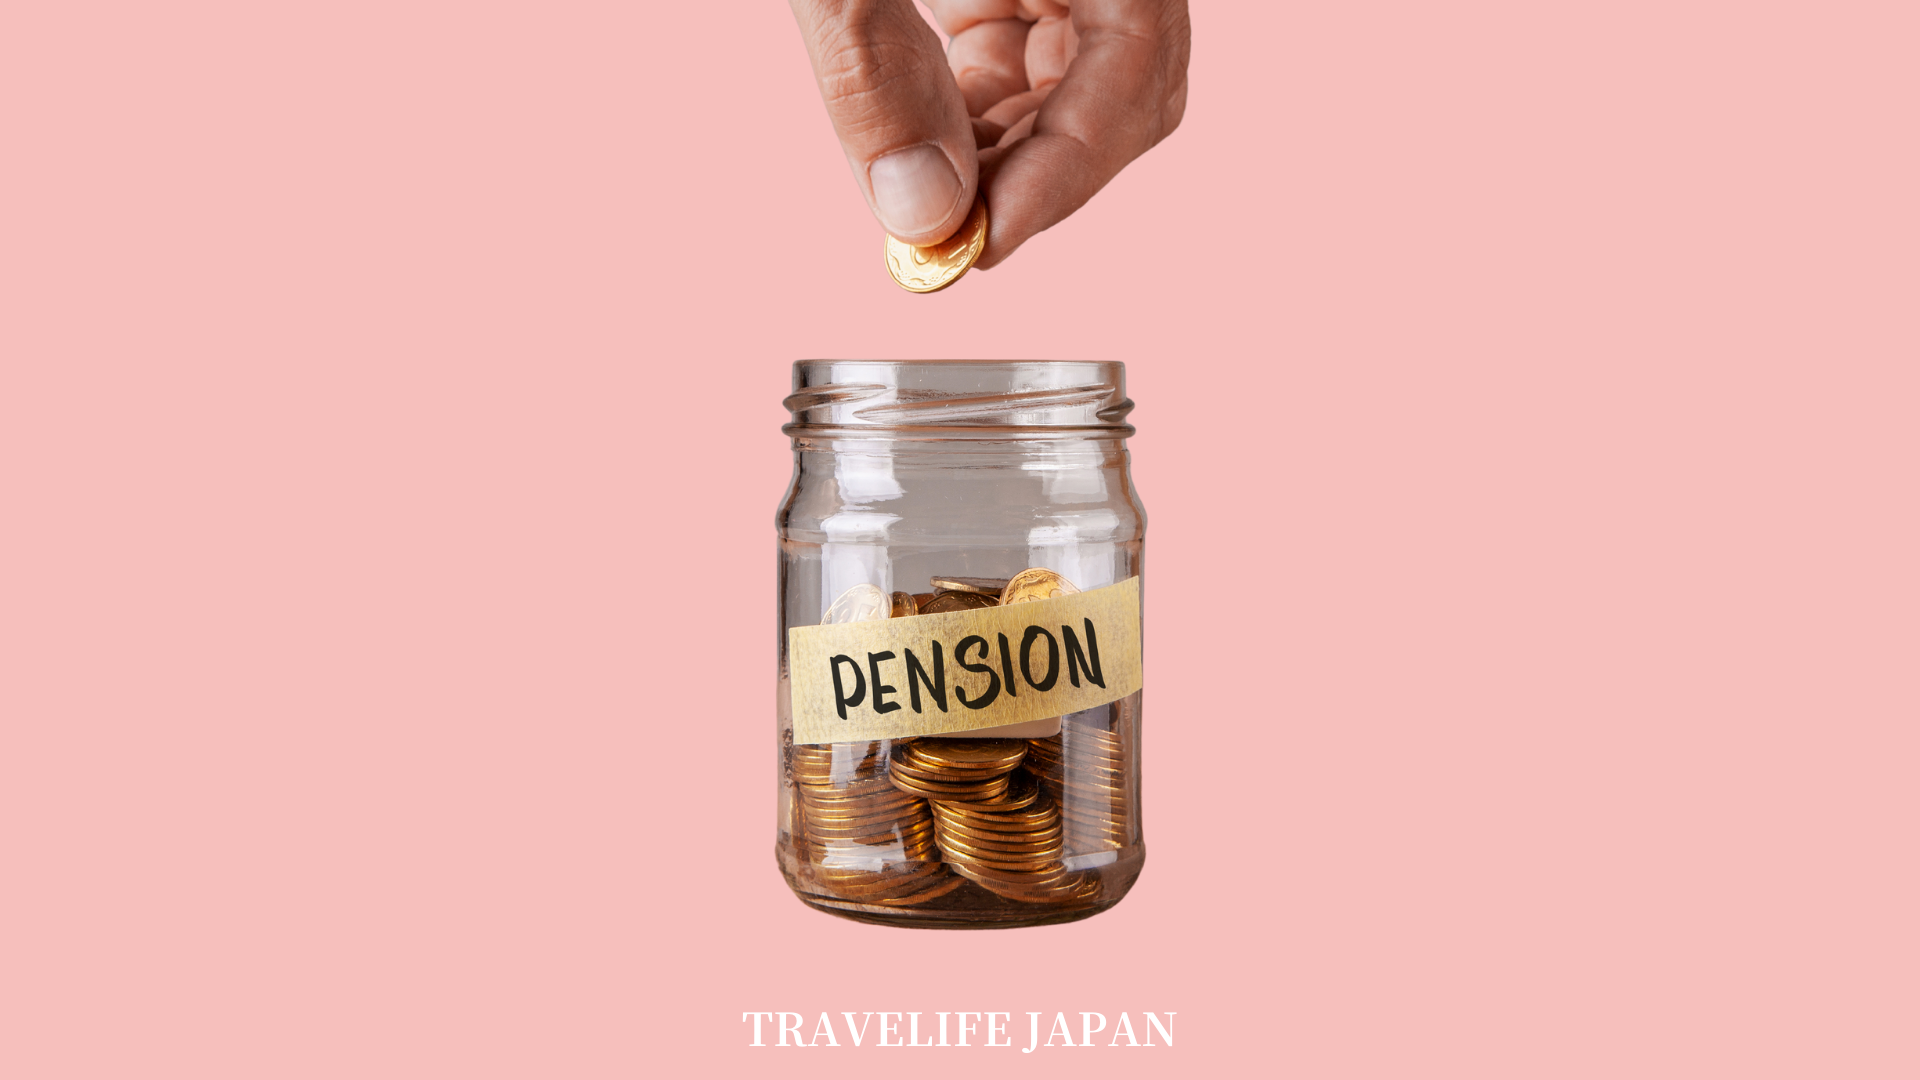 Travelife Japan_Pension_1